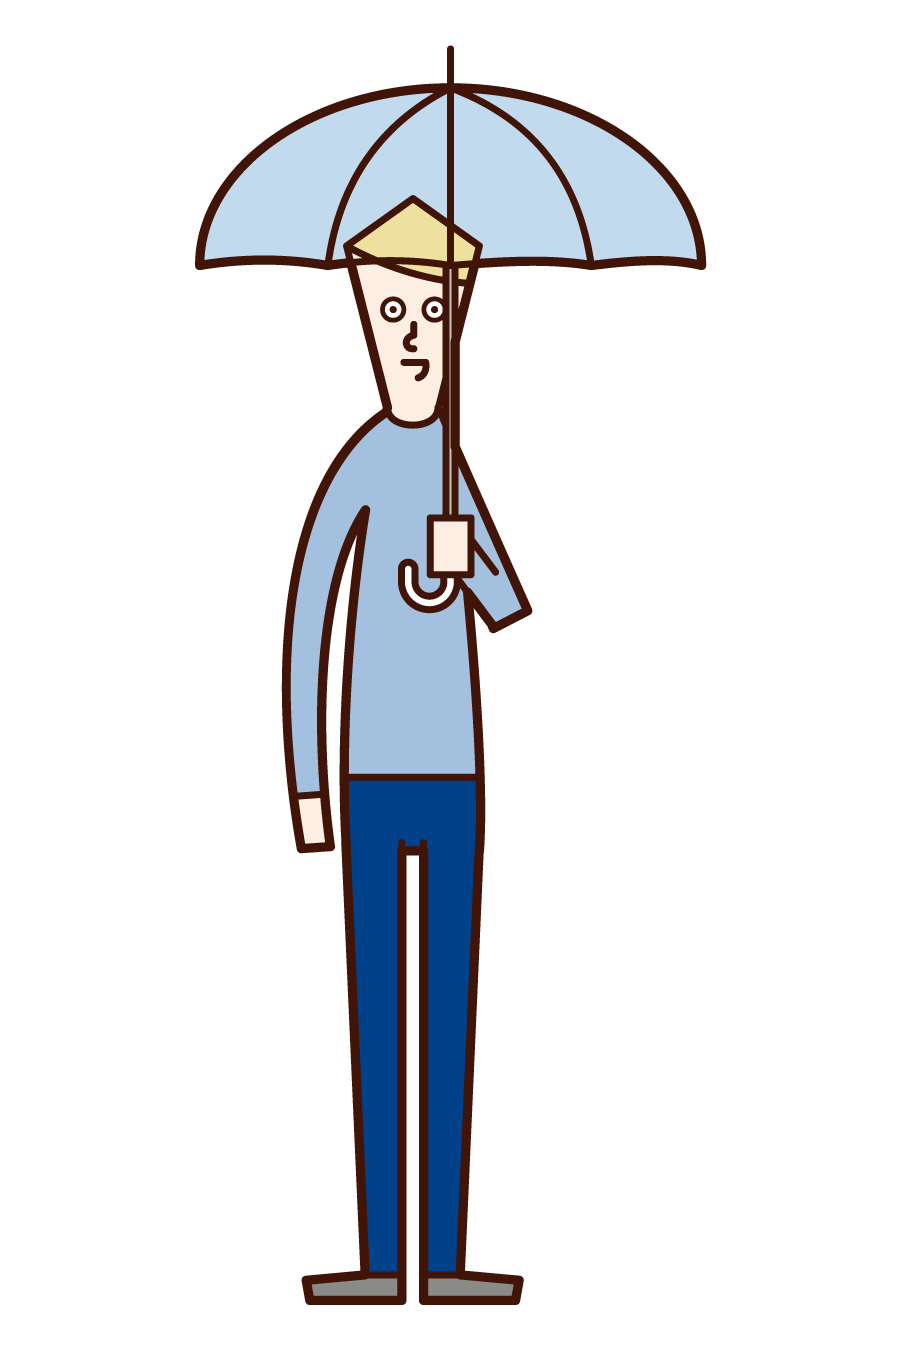 傘をさす人 男性 のイラスト フリーイラスト素材 Kukukeke ククケケ